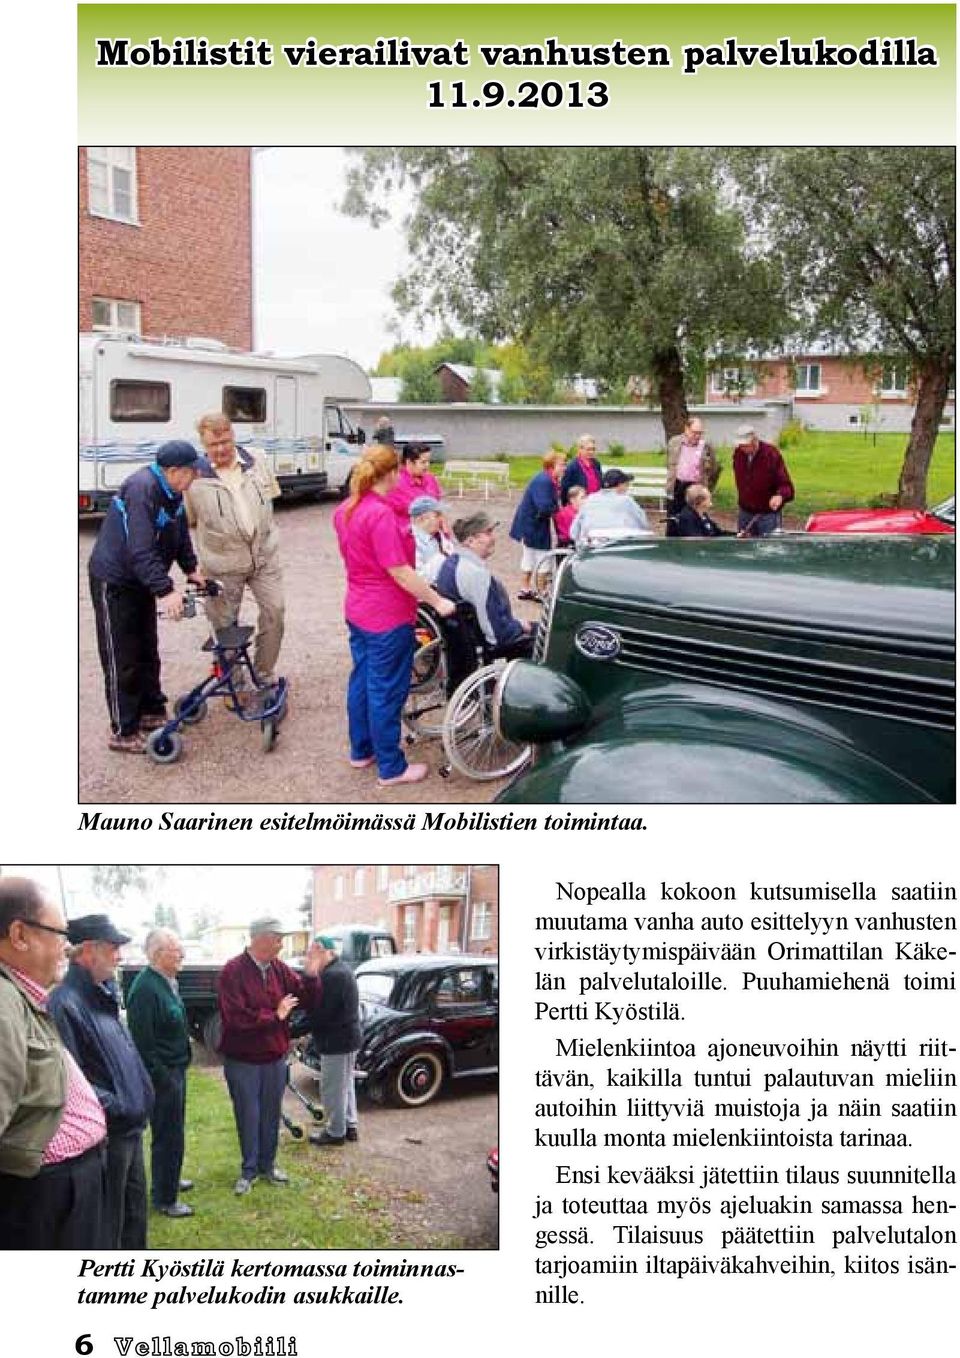 Nopealla kokoon kutsumisella saatiin muutama vanha auto esittelyyn vanhusten virkistäytymispäivään Orimattilan Käkelän palvelutaloille. Puuhamiehenä toimi Pertti Kyöstilä.